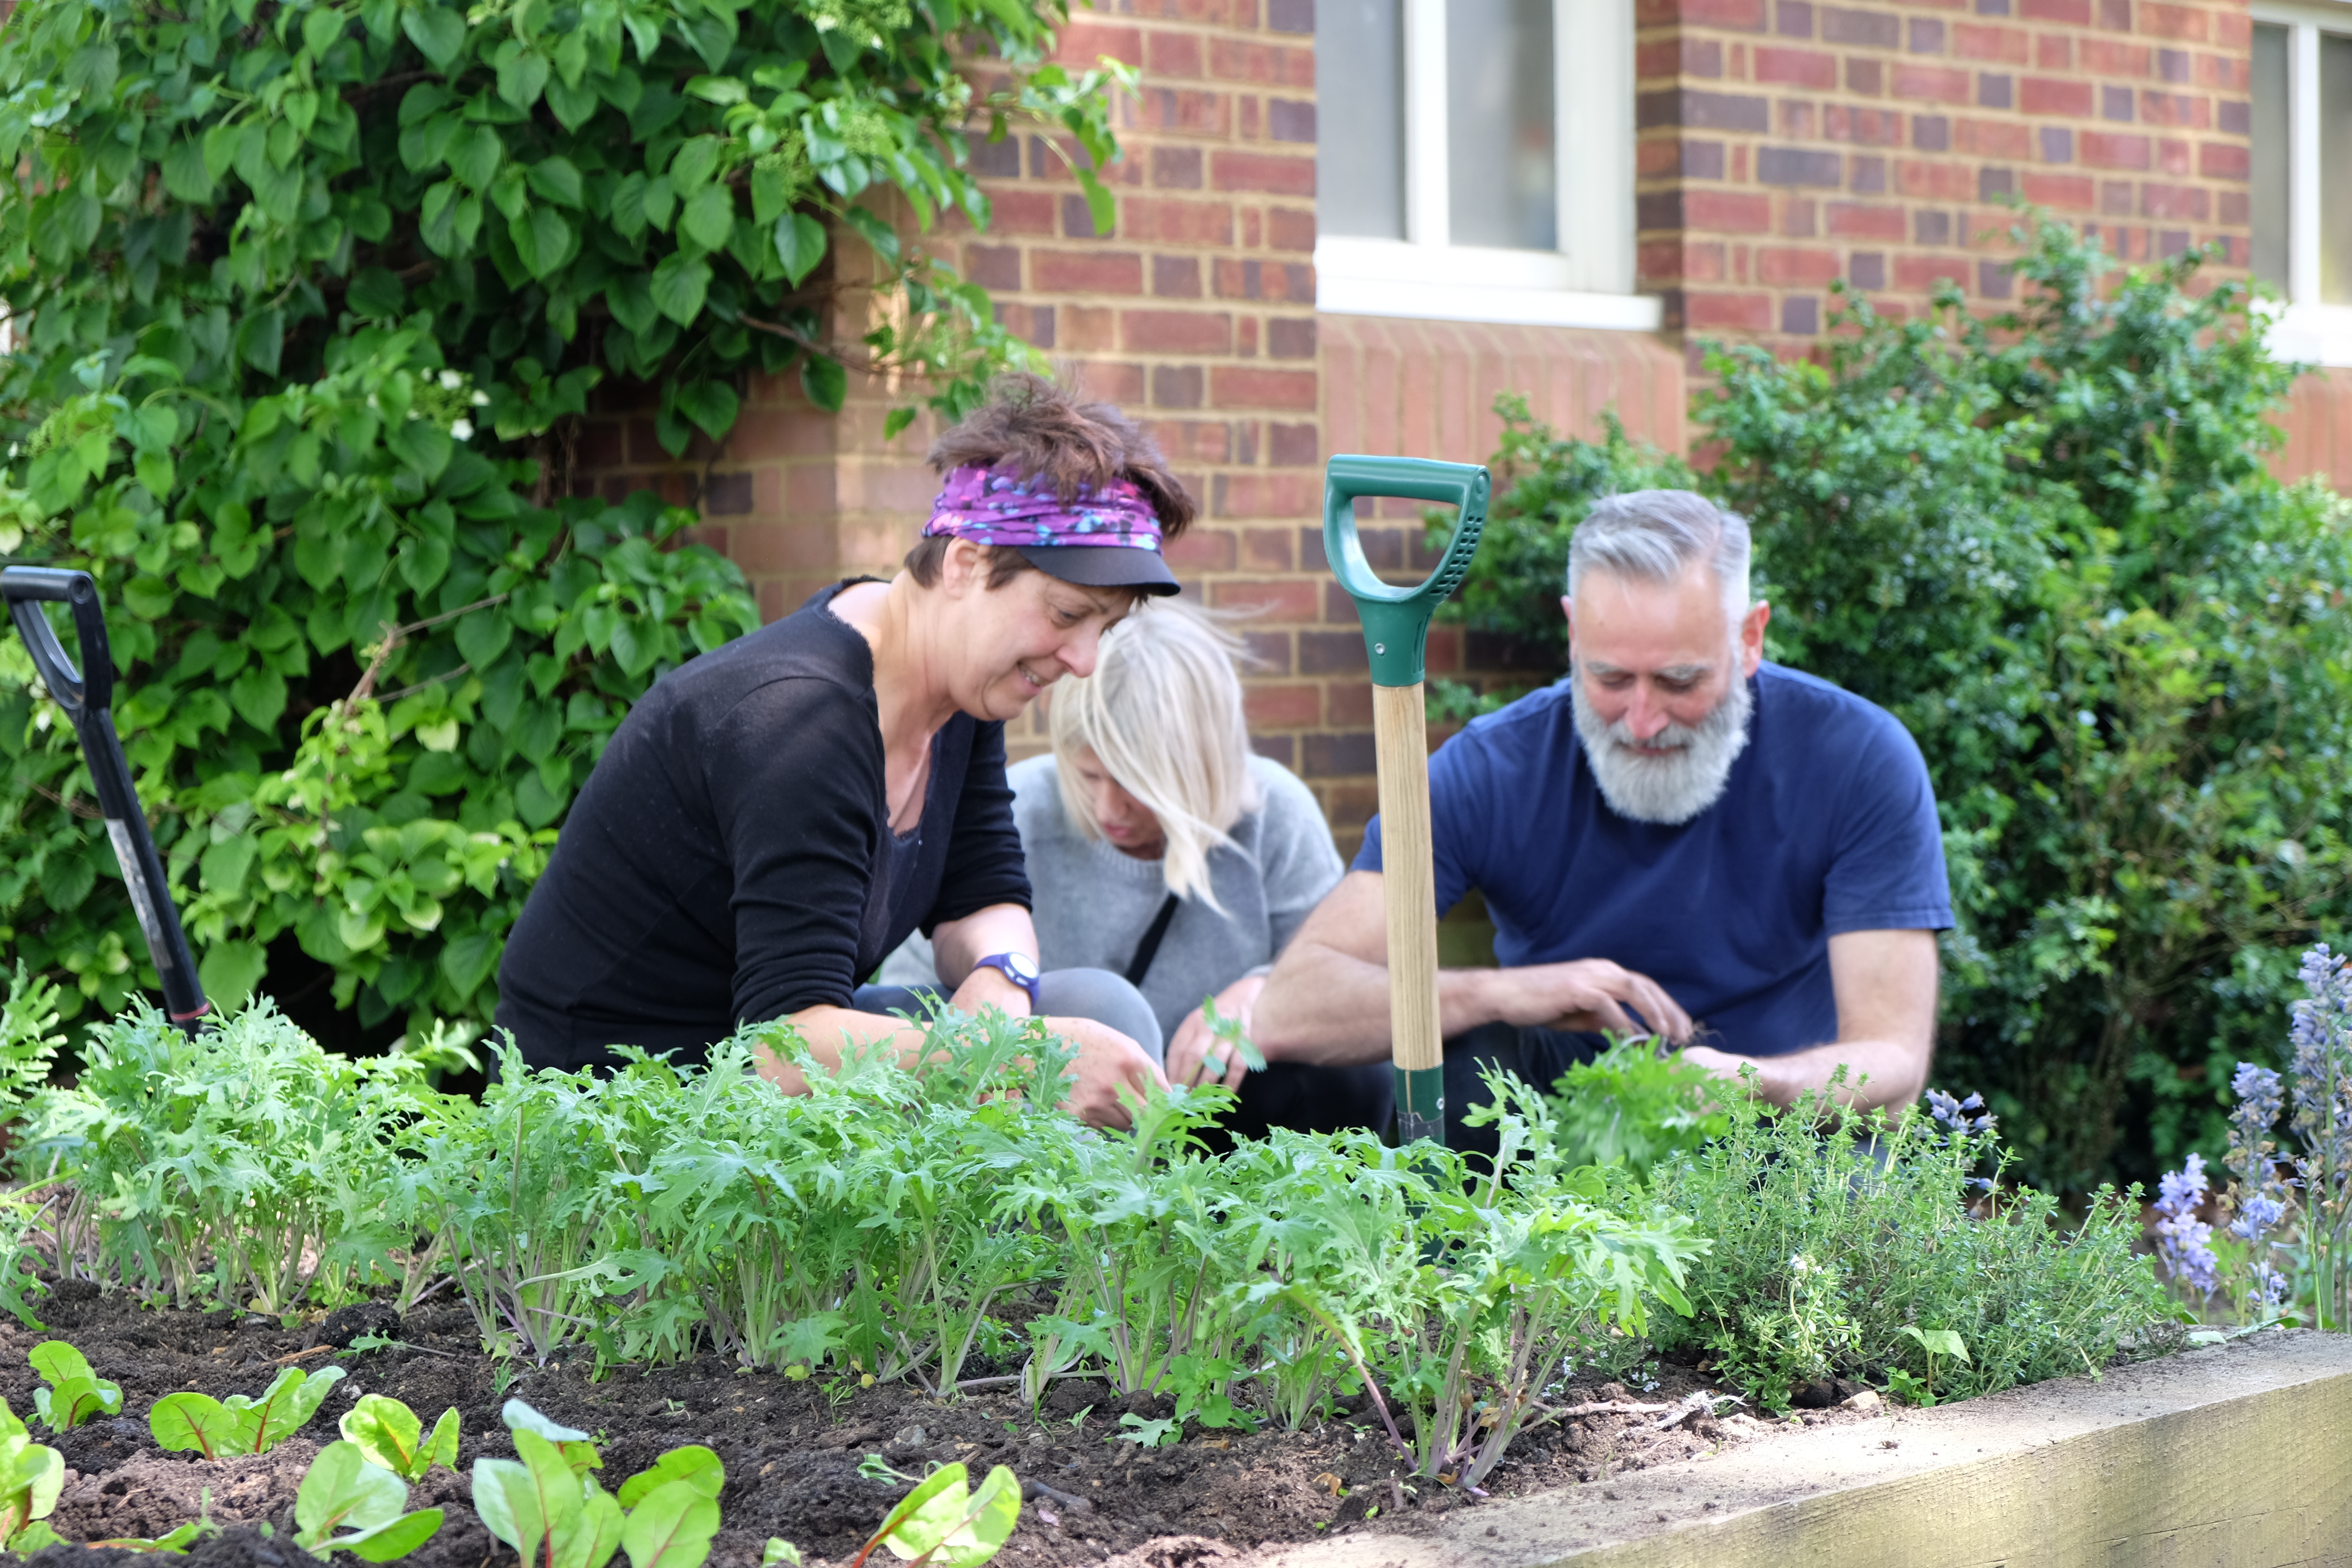 Amanda, Dee and David sorting the kale (3)